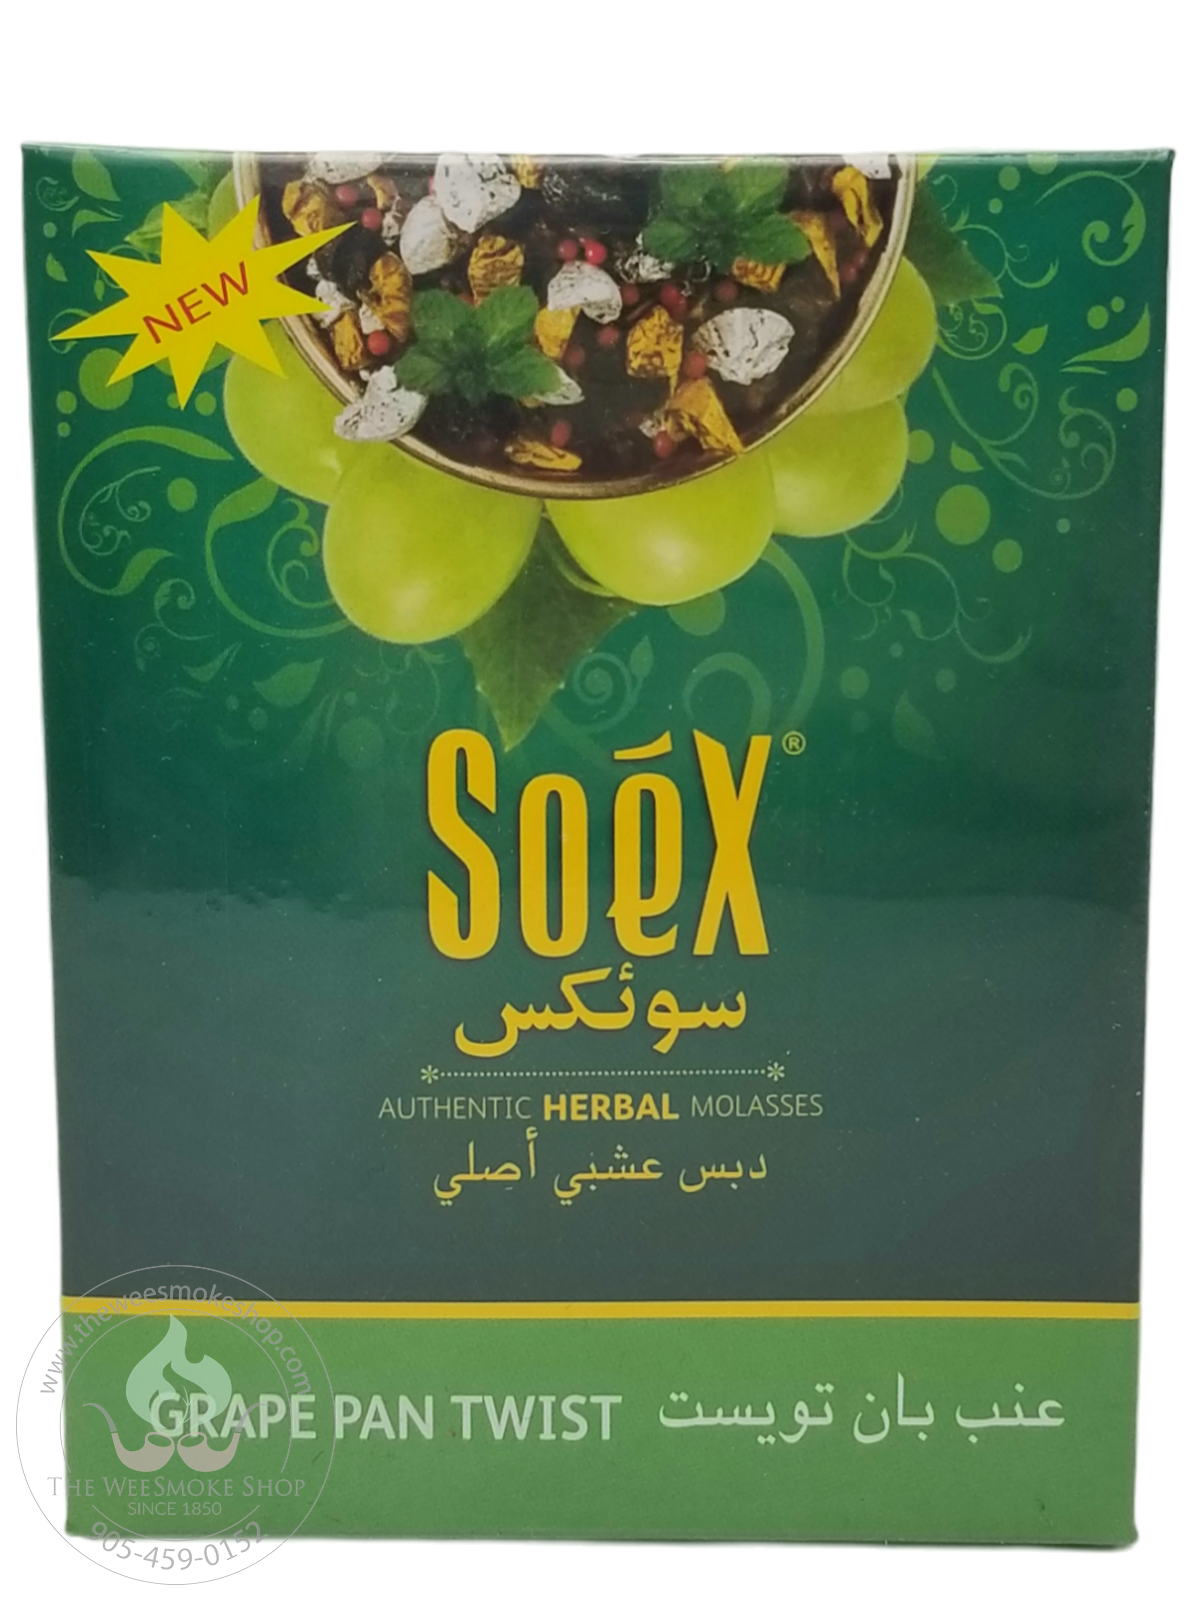 Grape Pan Twist Soex Herbal Molasses (250g)-Hookah accessories-The Wee Smoke Shop